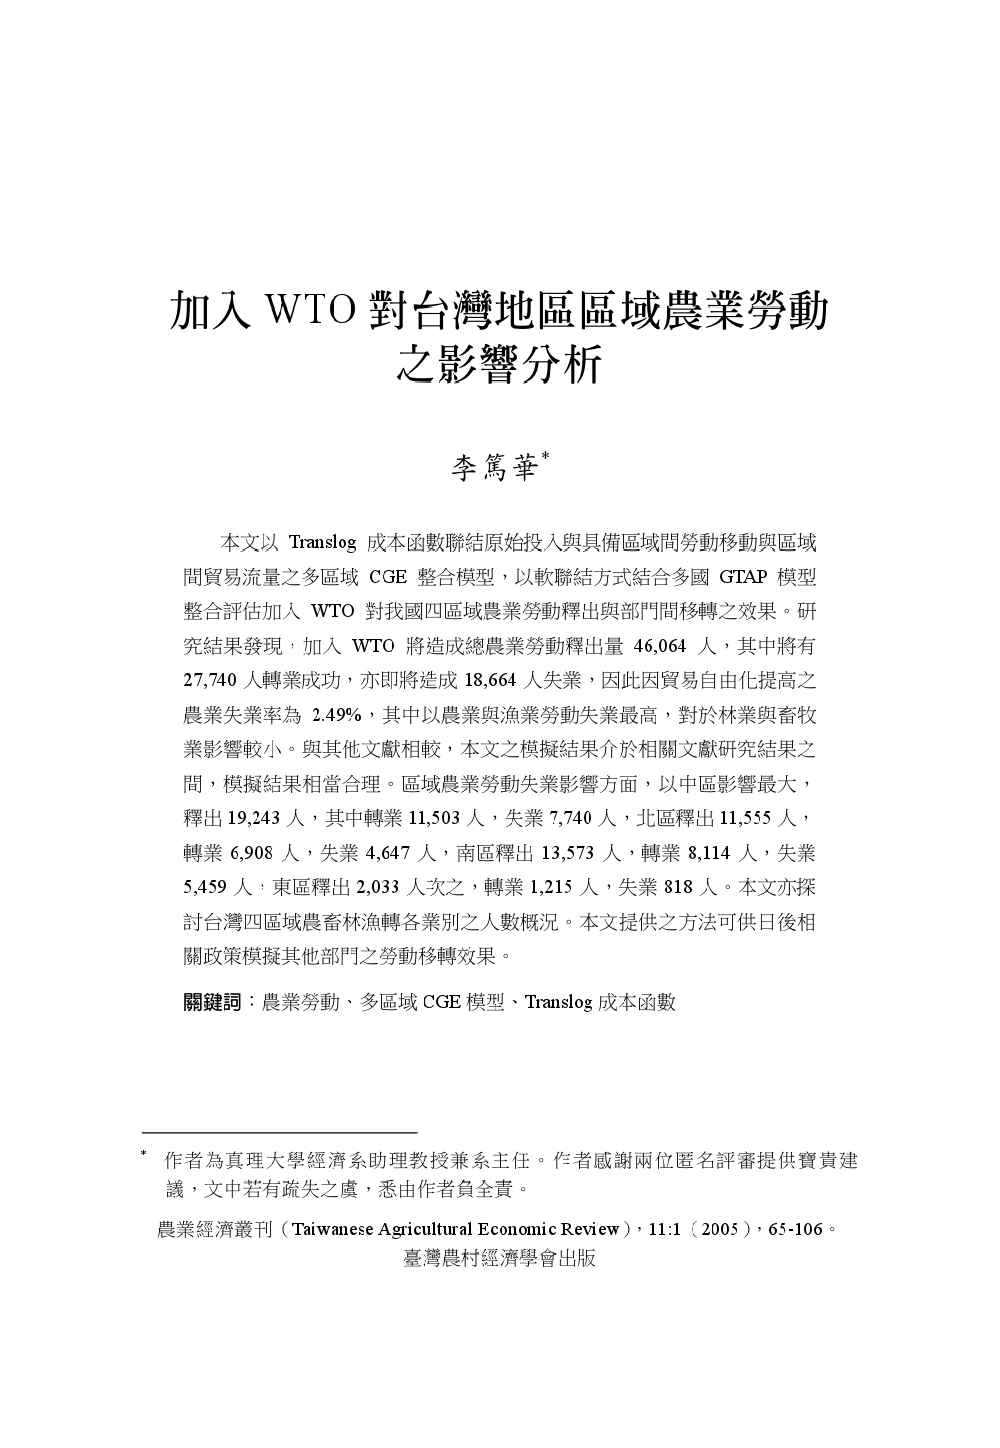 加入WTO對台灣地區區域農業勞動之影響分析.jpg